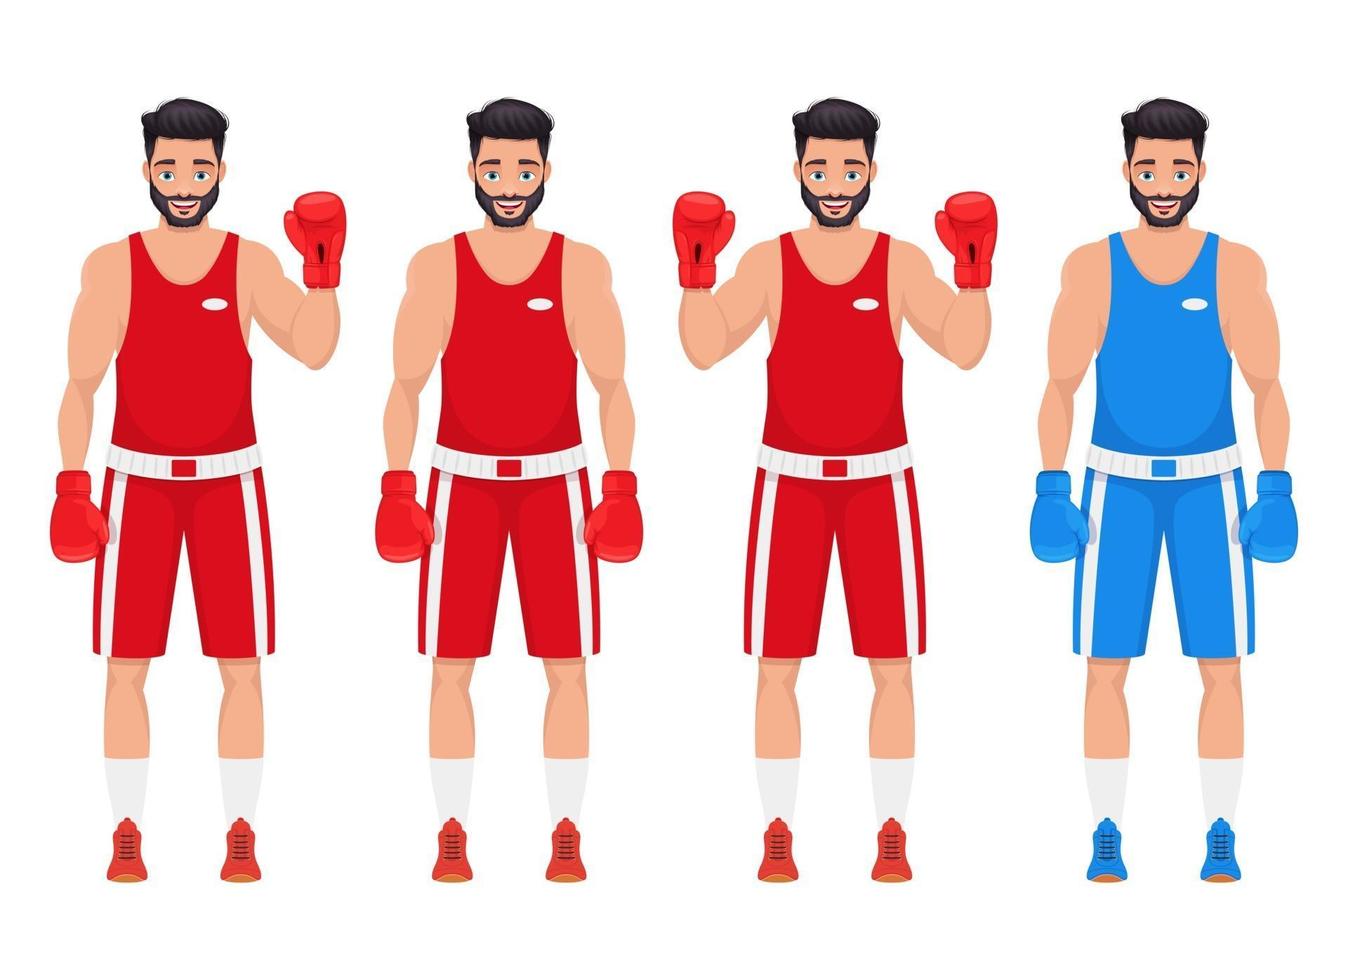 boksen man vector ontwerp illustratie geïsoleerd op een witte achtergrond